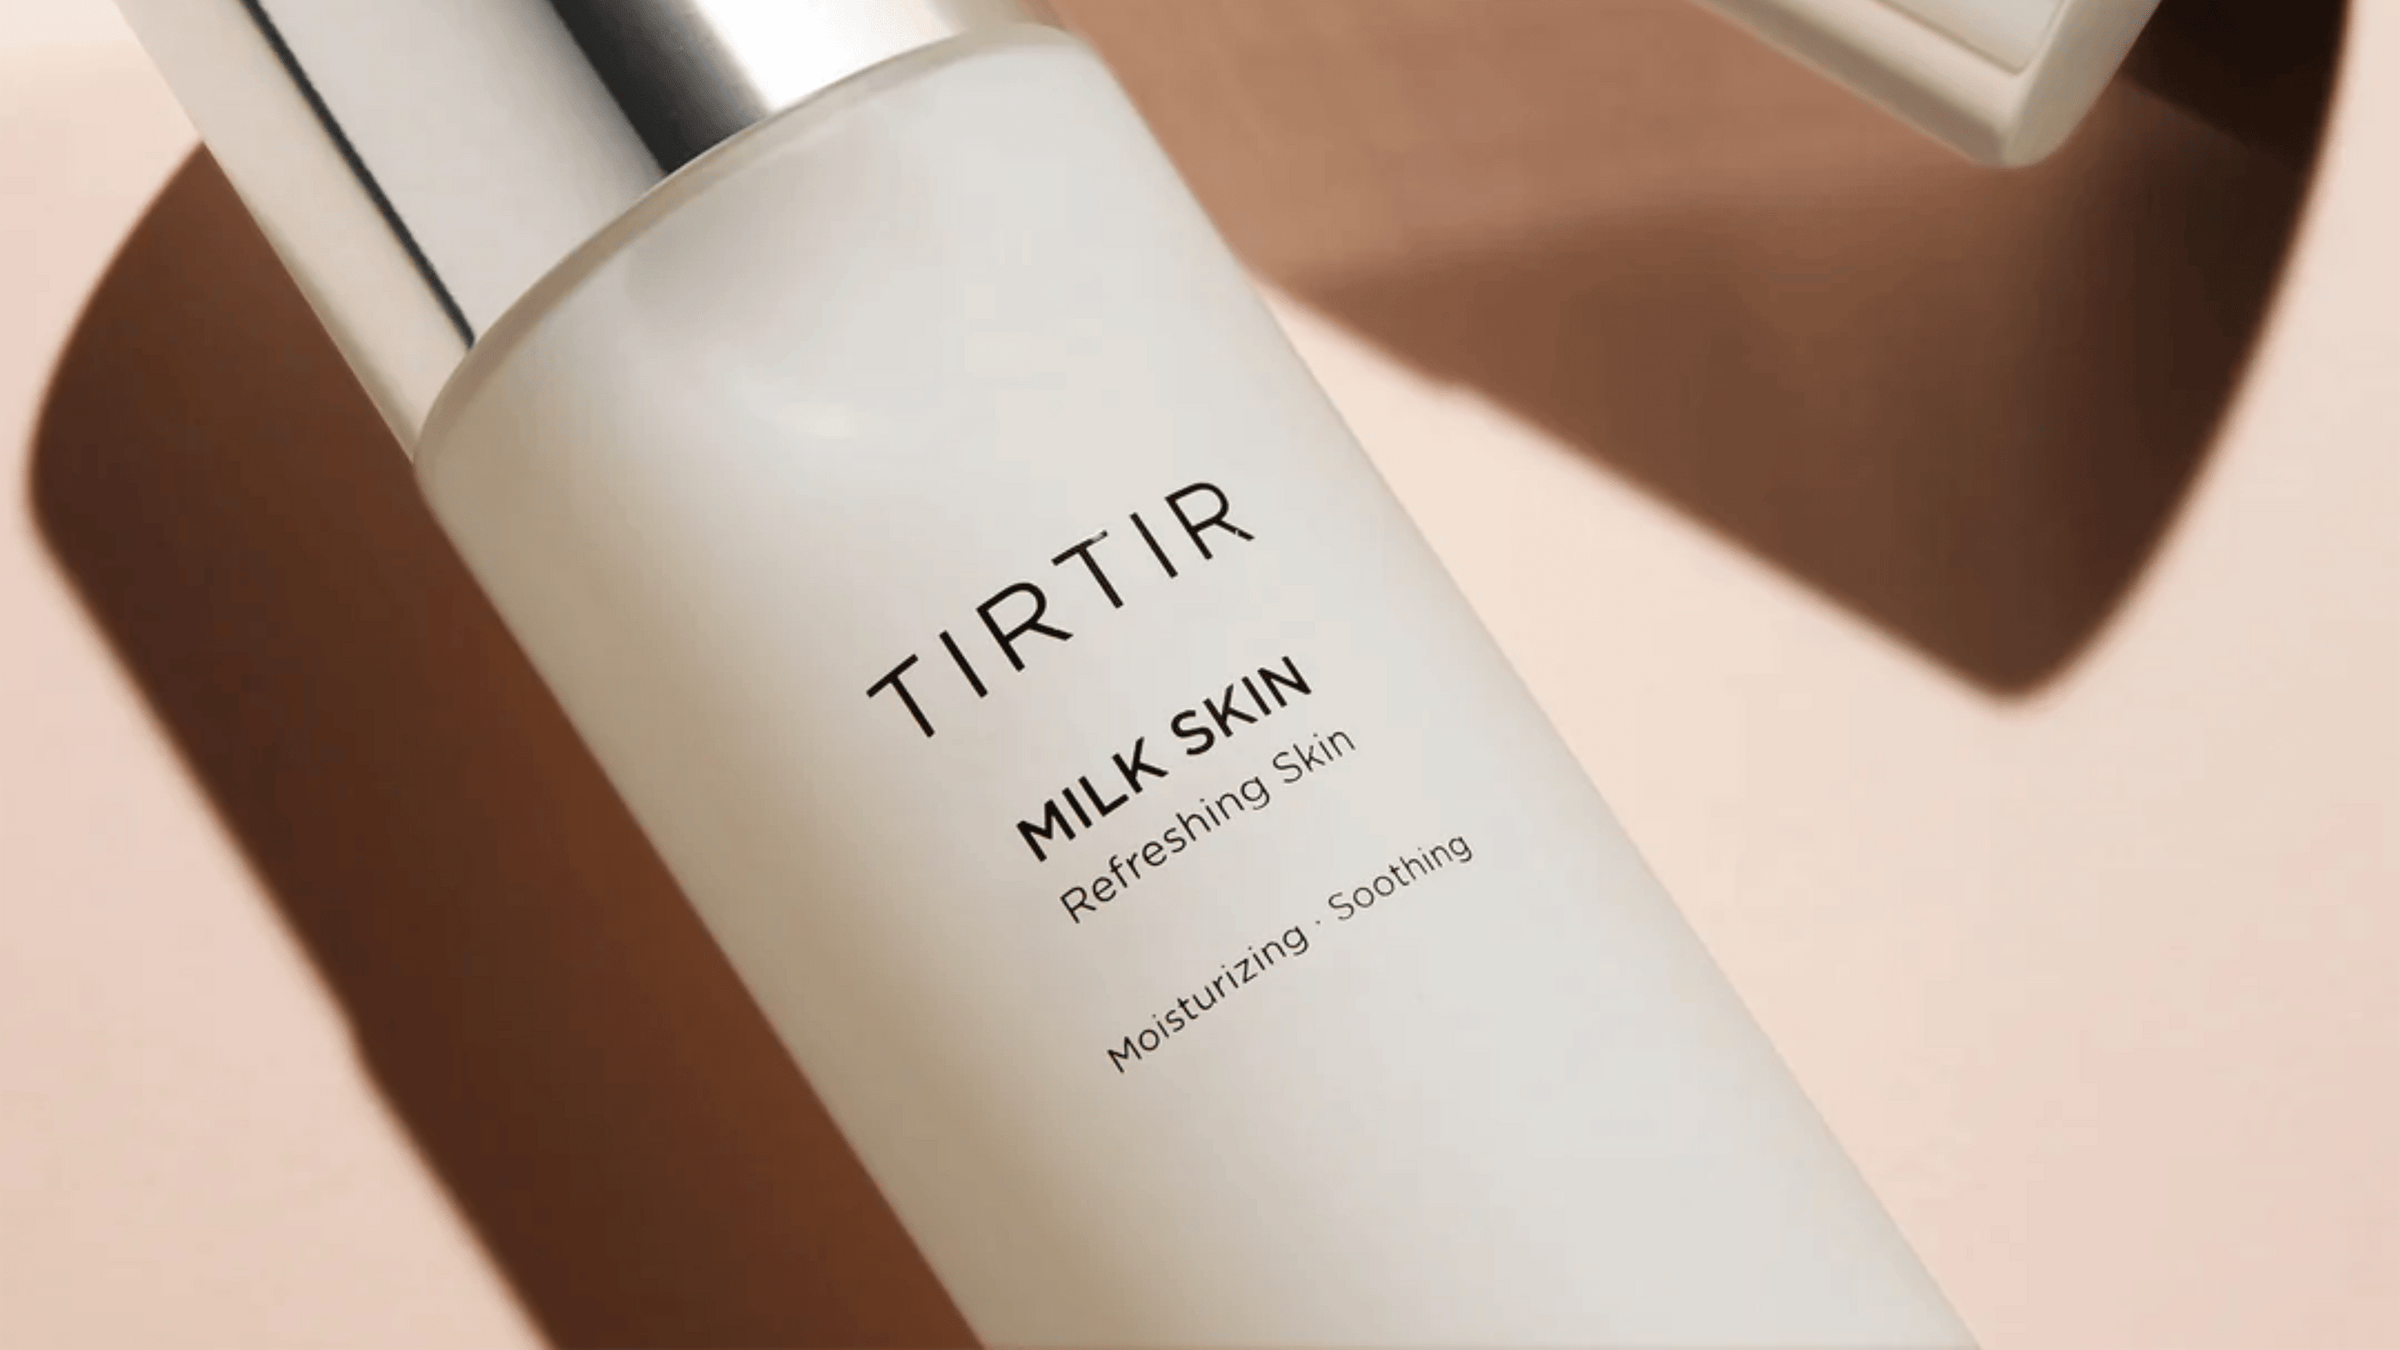 En bild av TIRTIRs "MILK SKIN" hudvårdsprodukt, som framhävs som uppfriskande och återfuktande.